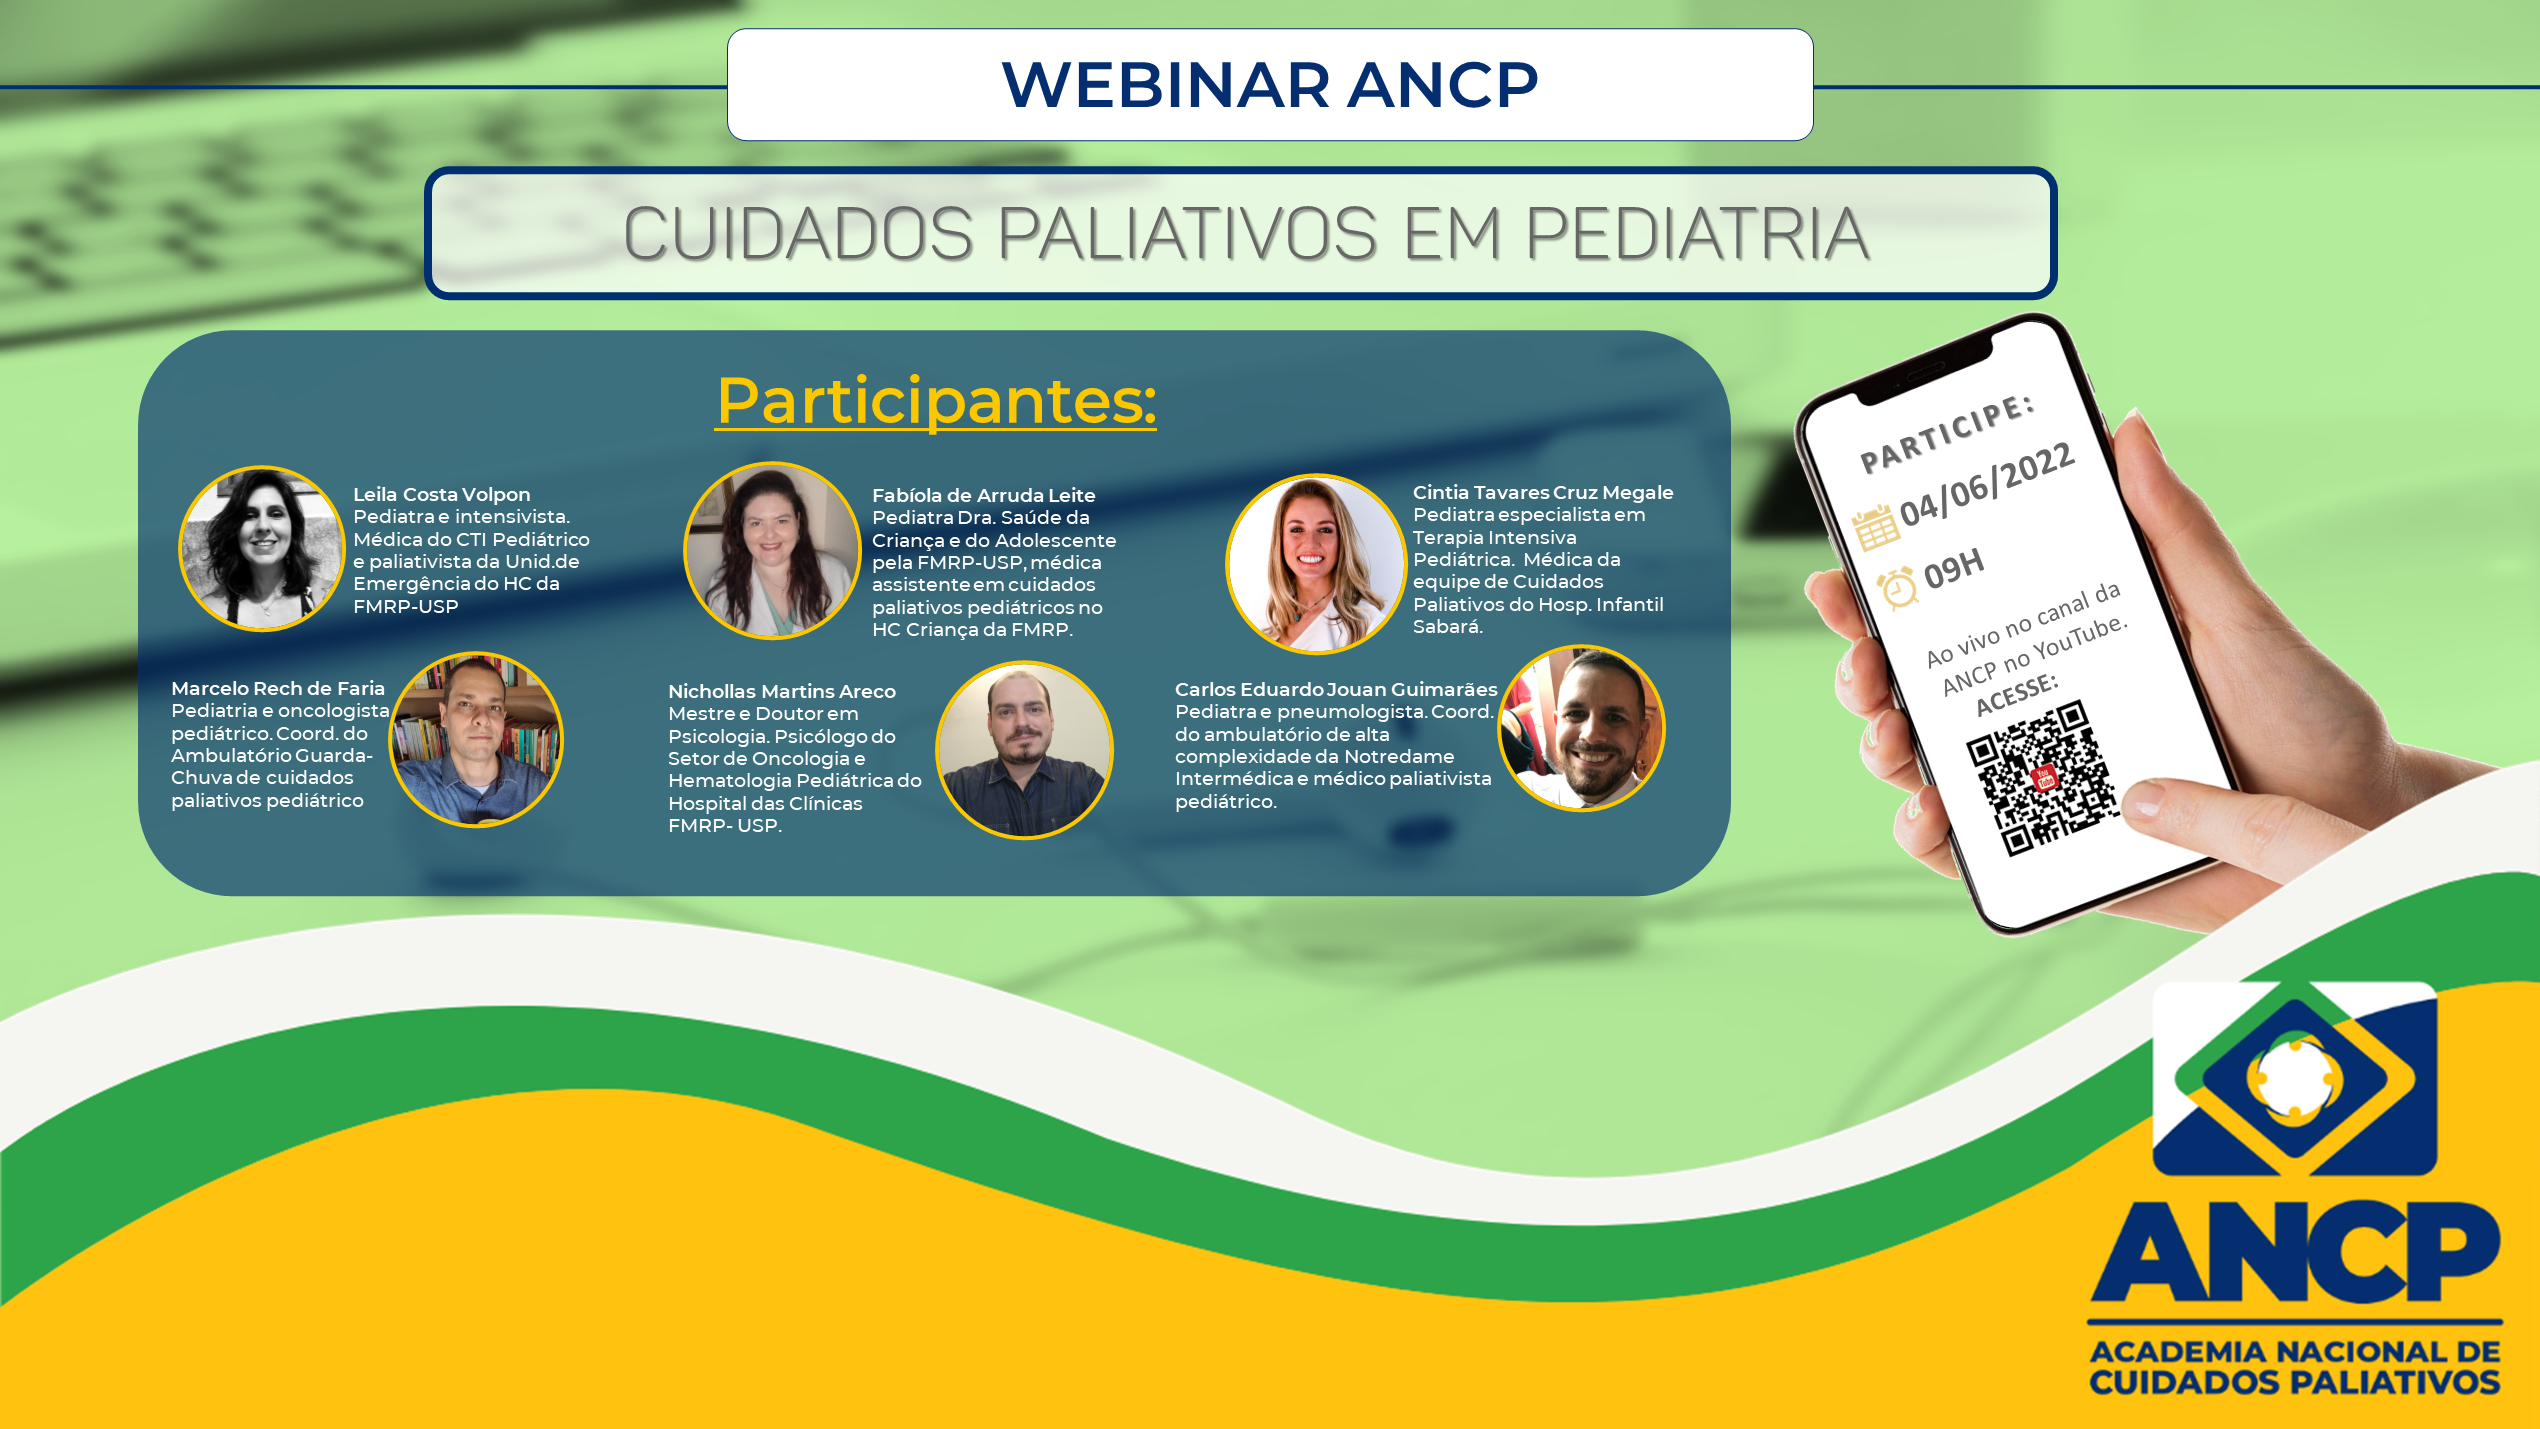 Webinar ANCP sobre Cuidados Paliativos em Pediatria